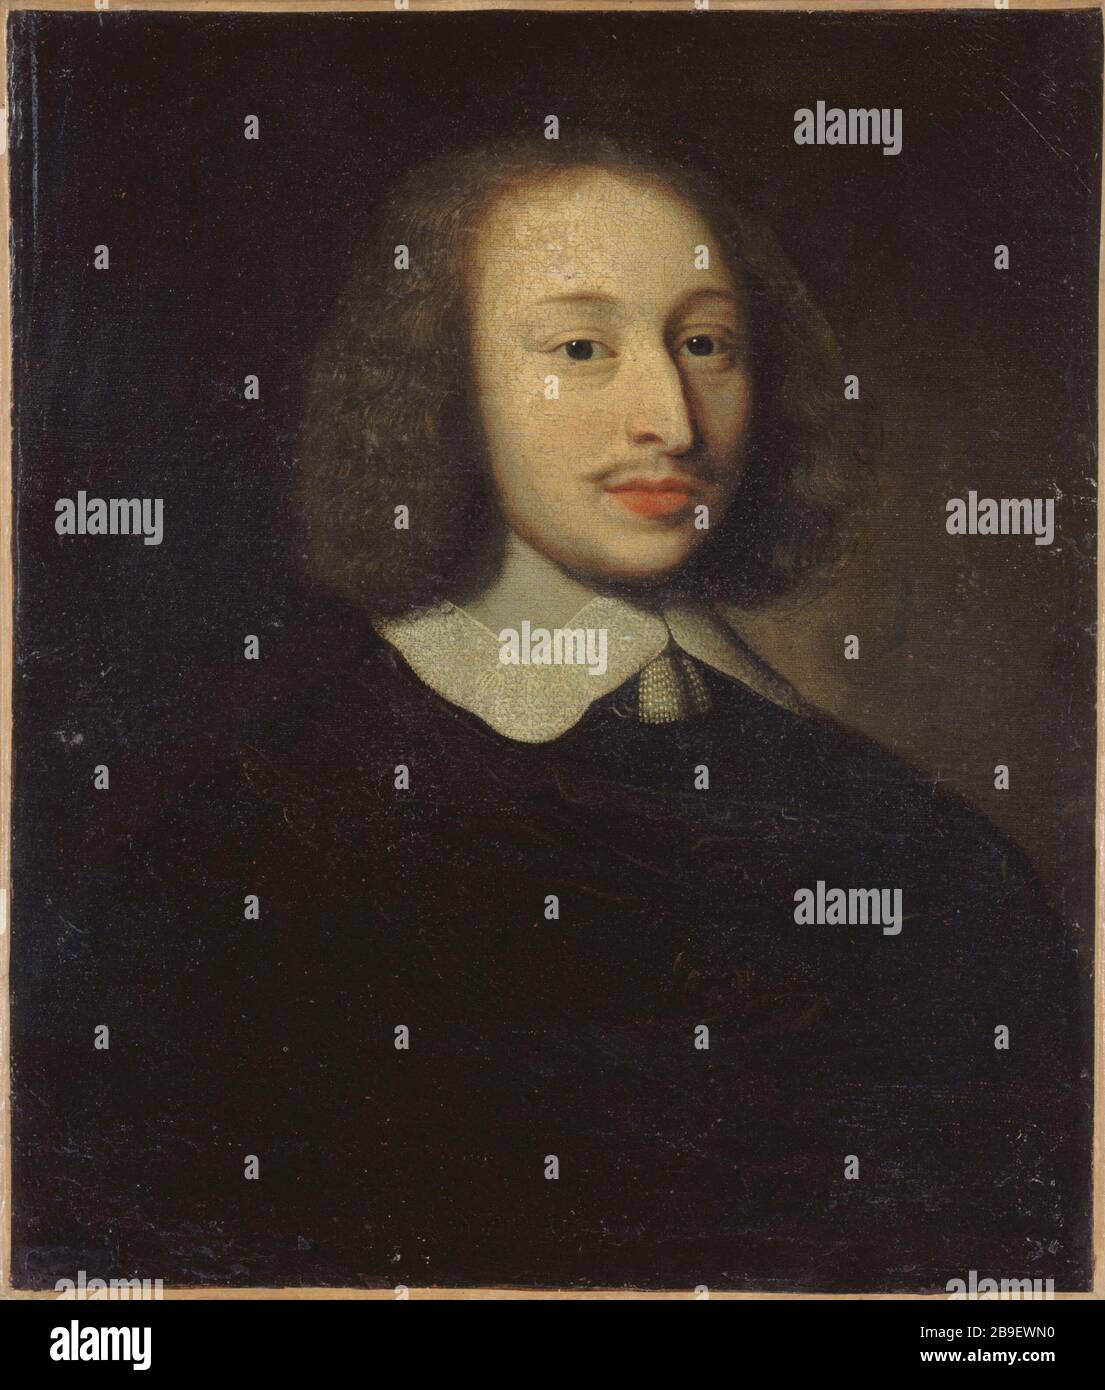 ALLEGED PORTRAIT OF BLAISE PASCAL Portrait présumé de Blaise Pascal (1623-1662), savant et écrivain français. Anonyme. Paris, musée Carnavalet. Stock Photo